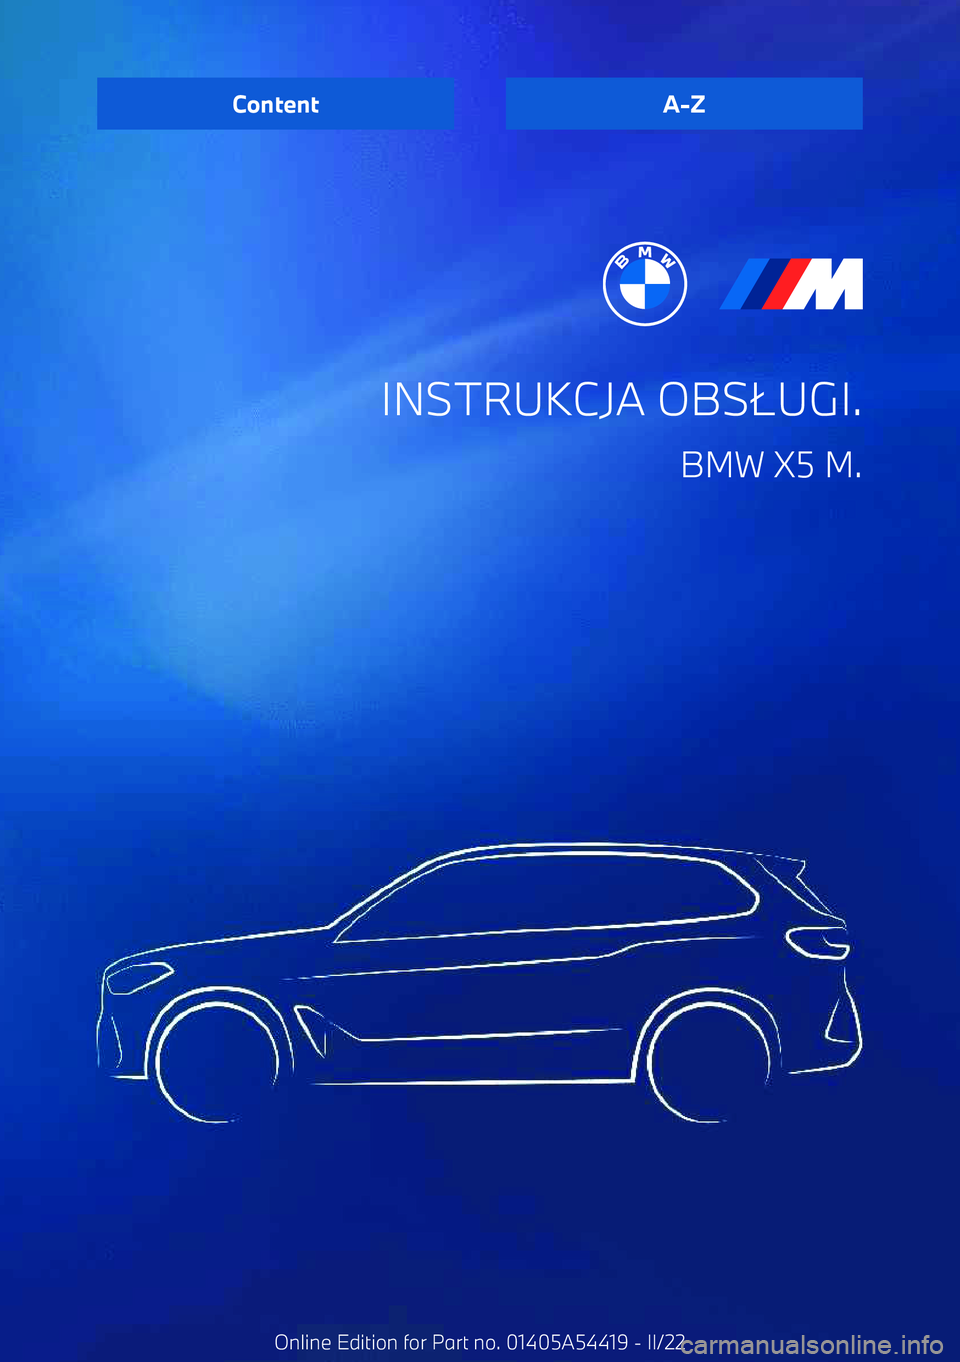 BMW X5 M 2022  Instrukcja obsługi (in Polish) INSTRUKCJA OBS.UGI.
BMW X5 M.ContentA